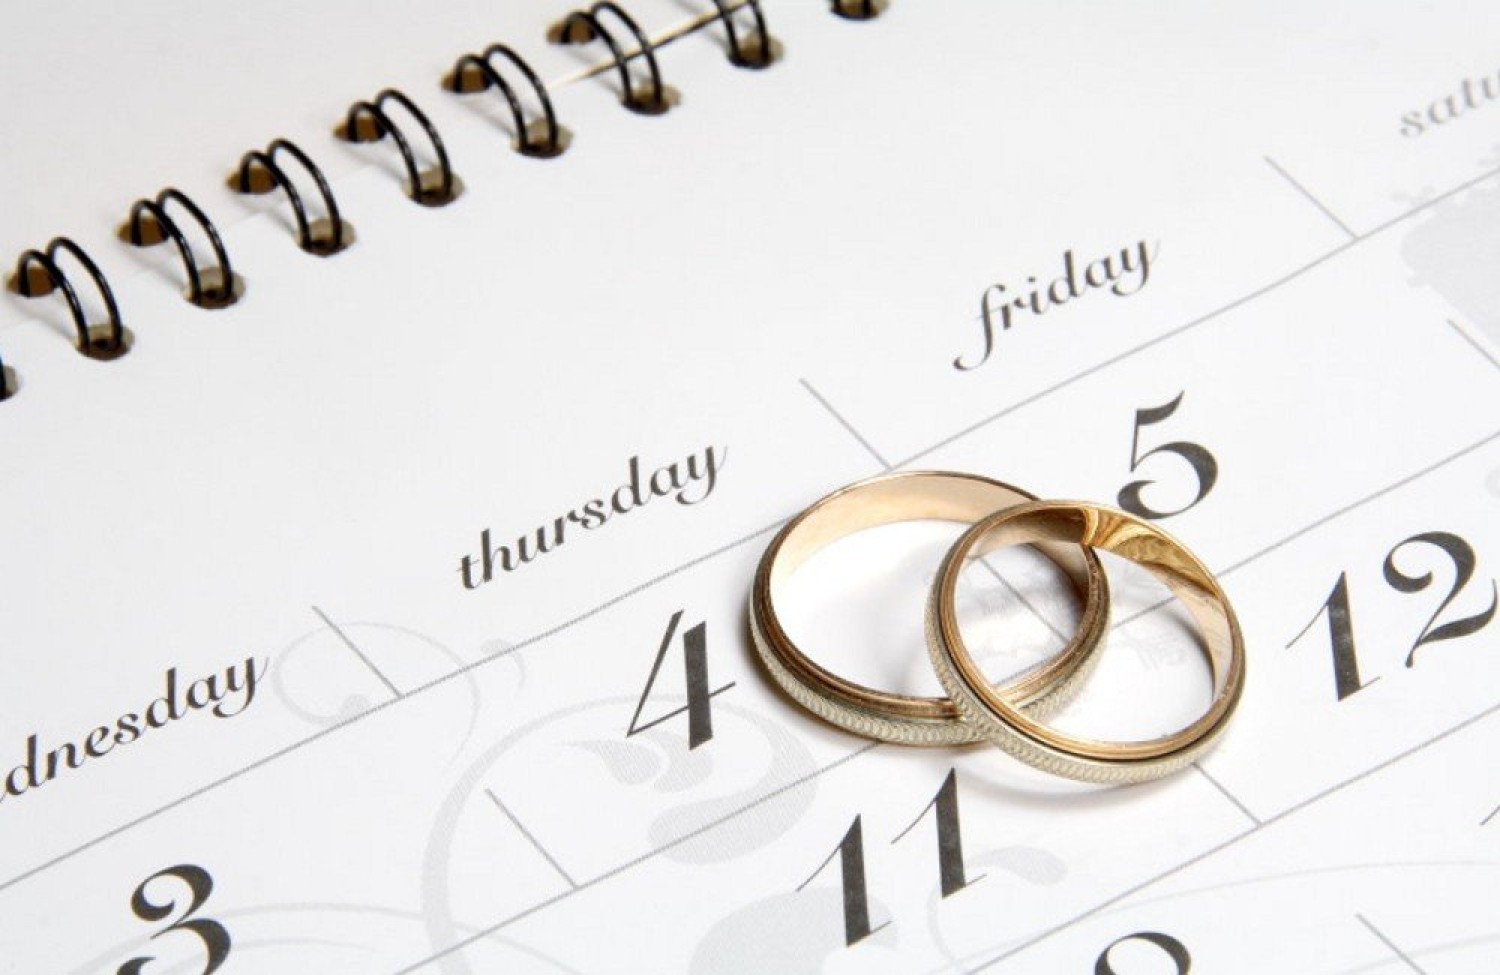 Свадьба в день рождения жениха или невесты – рекомендации организаторов и народные приметы